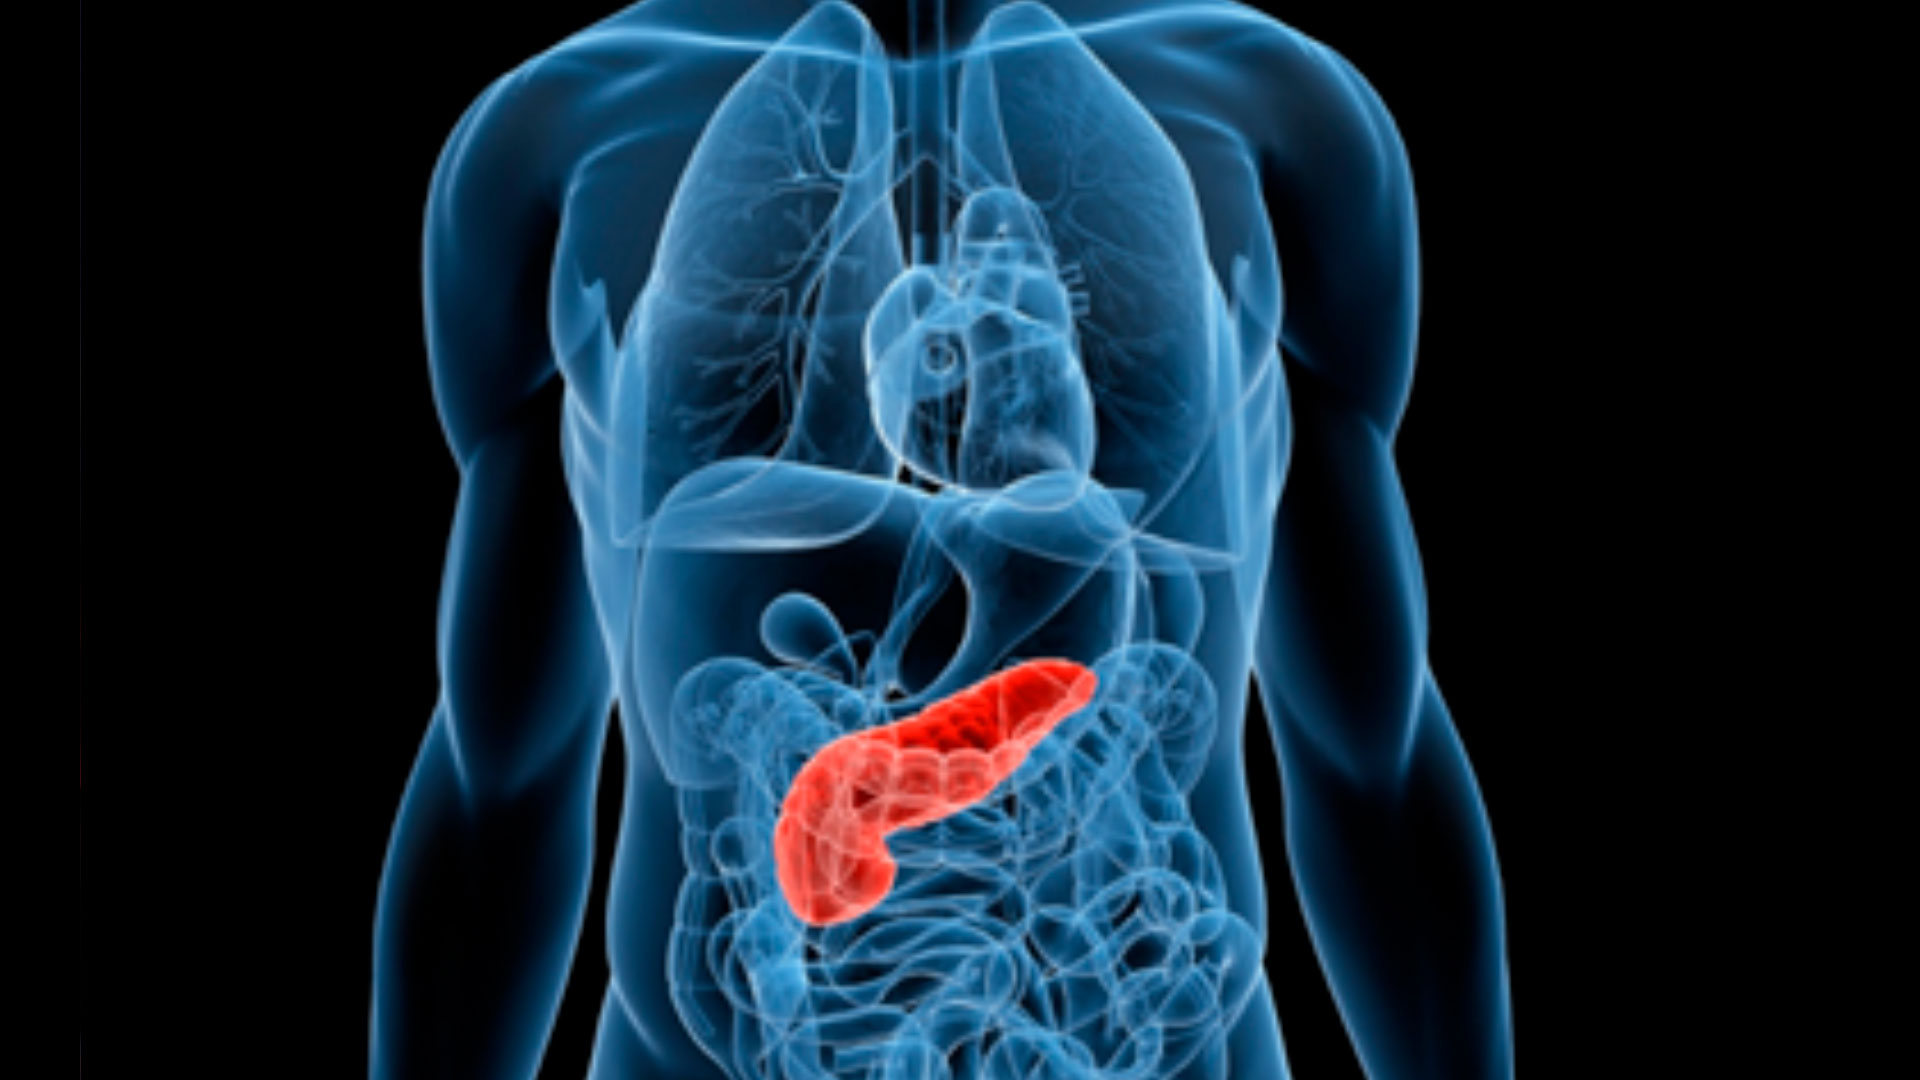 Trapianto di pancreas, una possibile cura per il diabete non ancora considerata dalla comunità scientifica